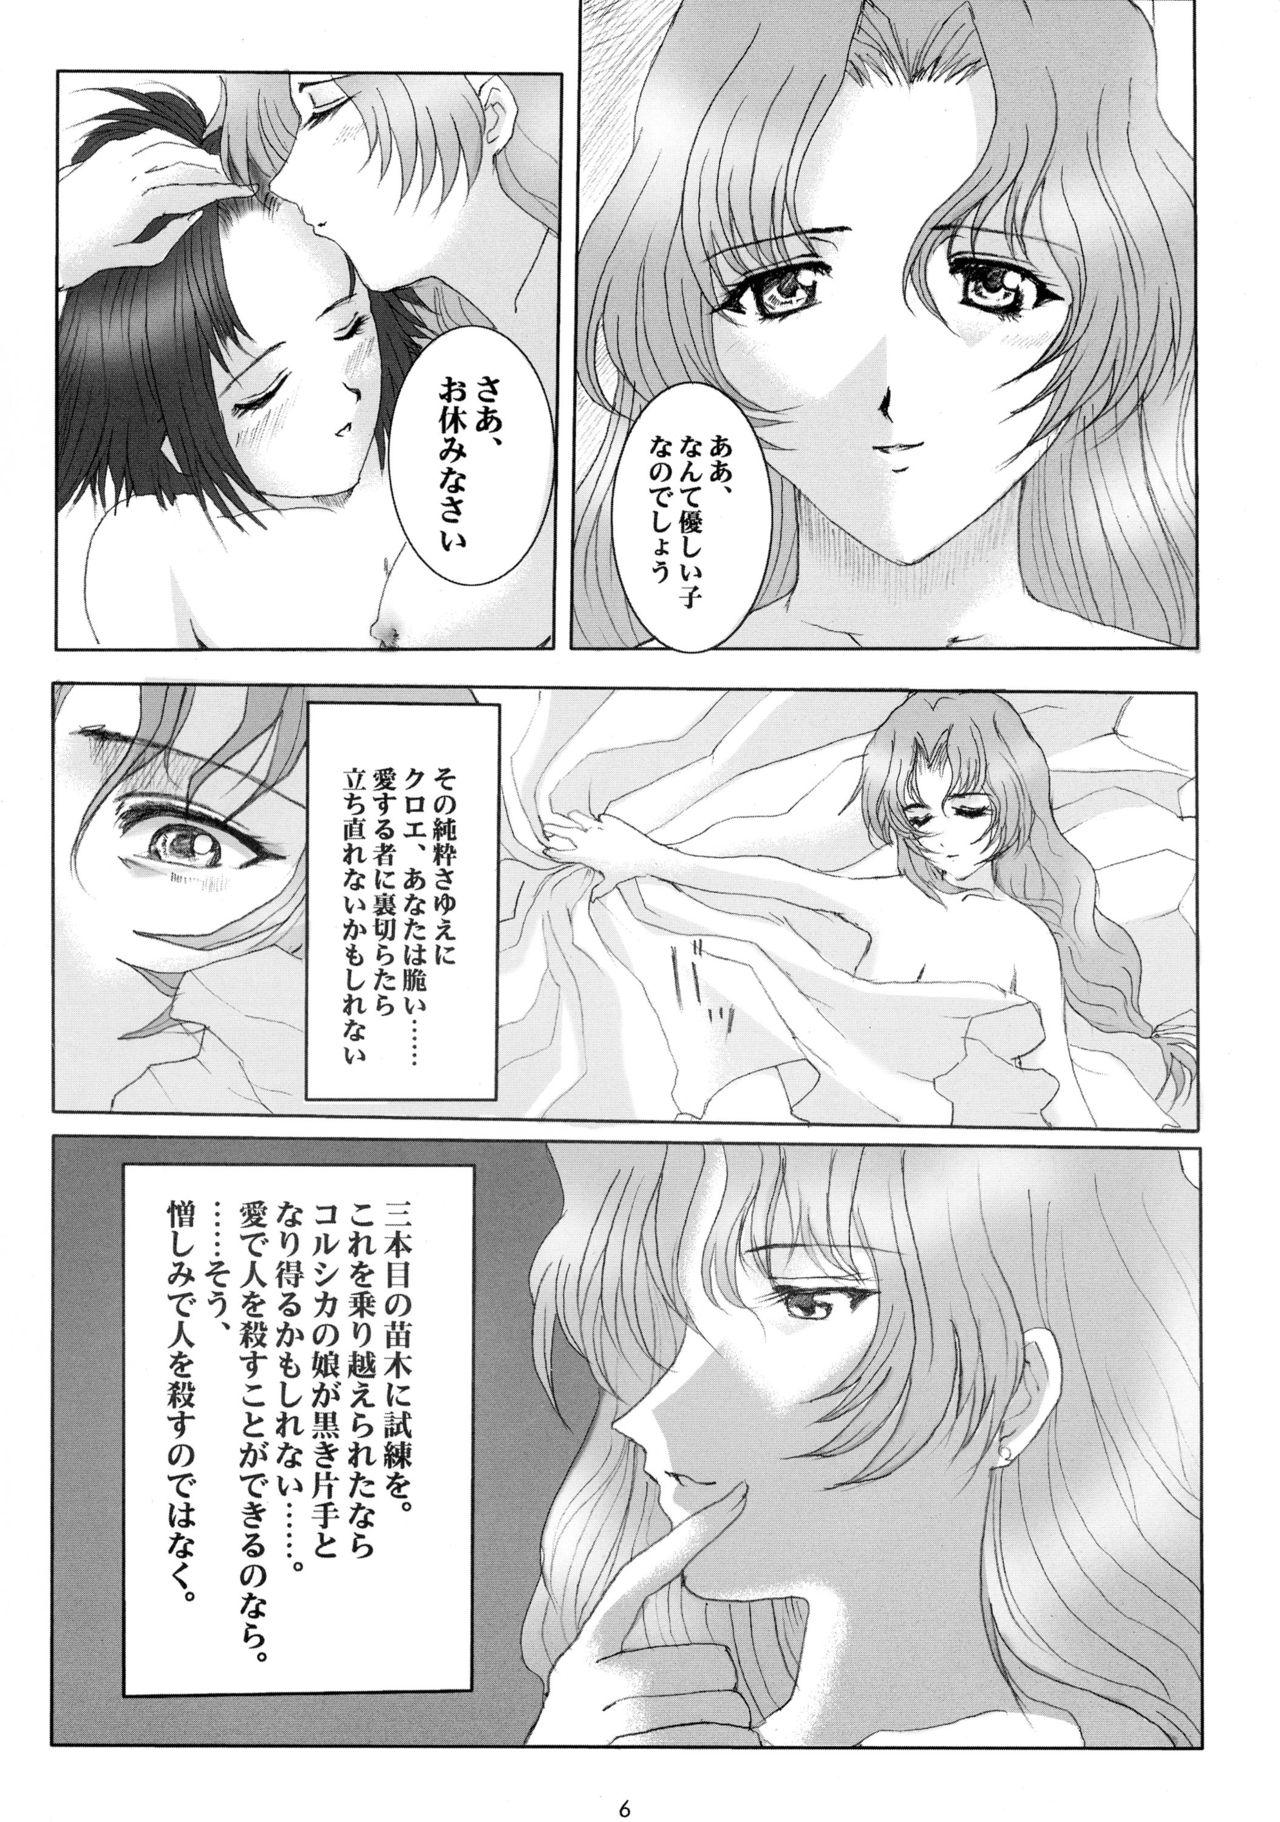 Woman Promesse II Yakusoku no Toki Kanketsuhen - Noir Horny - Page 6